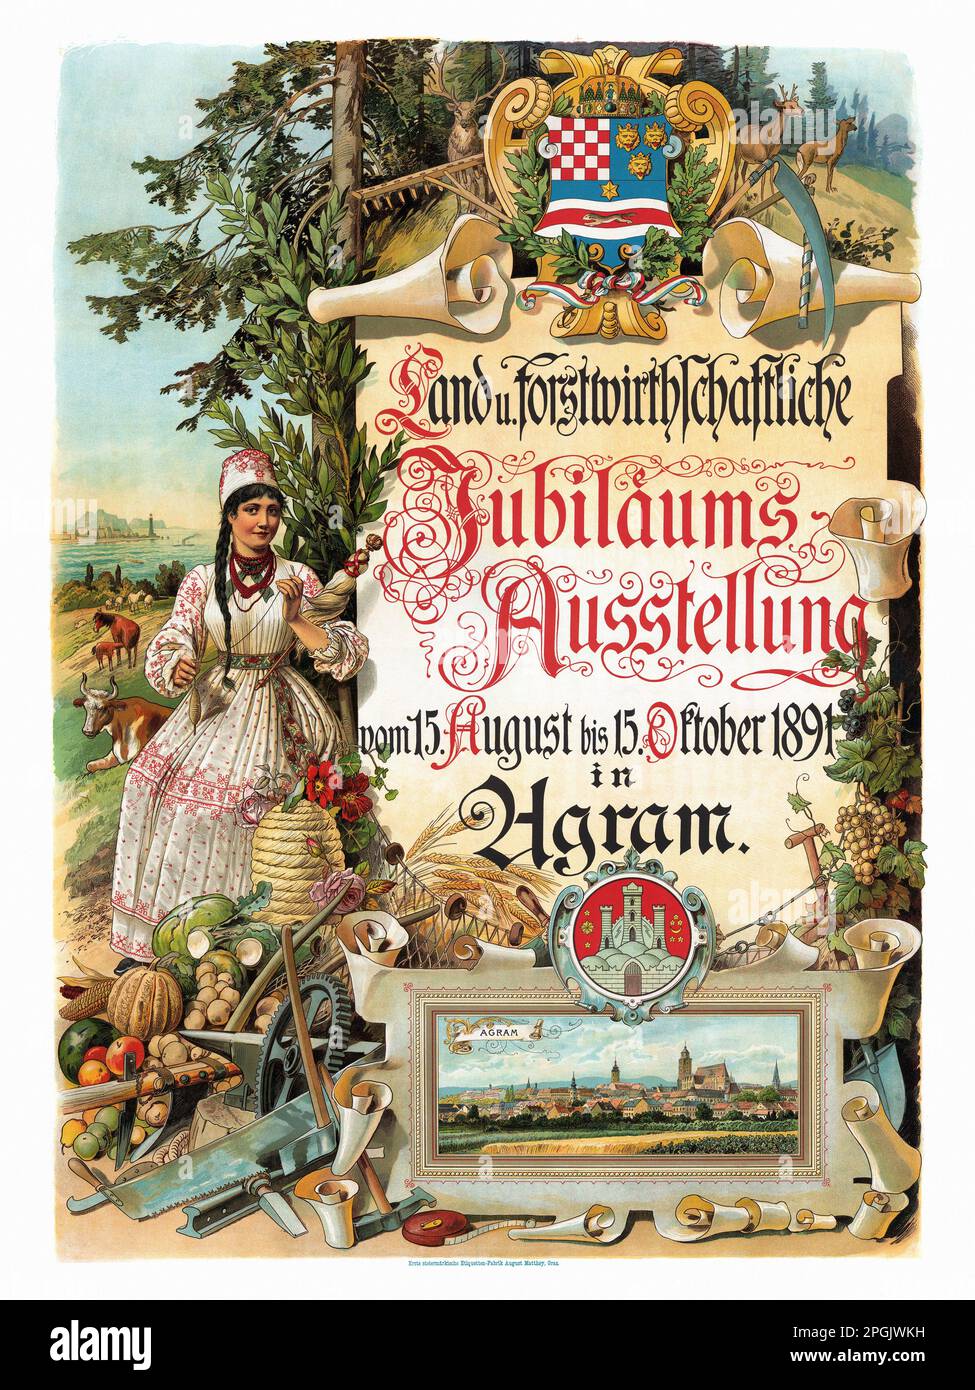 Land U. Forstwirtchschaftliche Jubilaeum-Ausstellung vom 15. Août bis 15. Oktober 1891 dans Agram. Artiste inconnu. Affiche publiée en Autriche. Banque D'Images